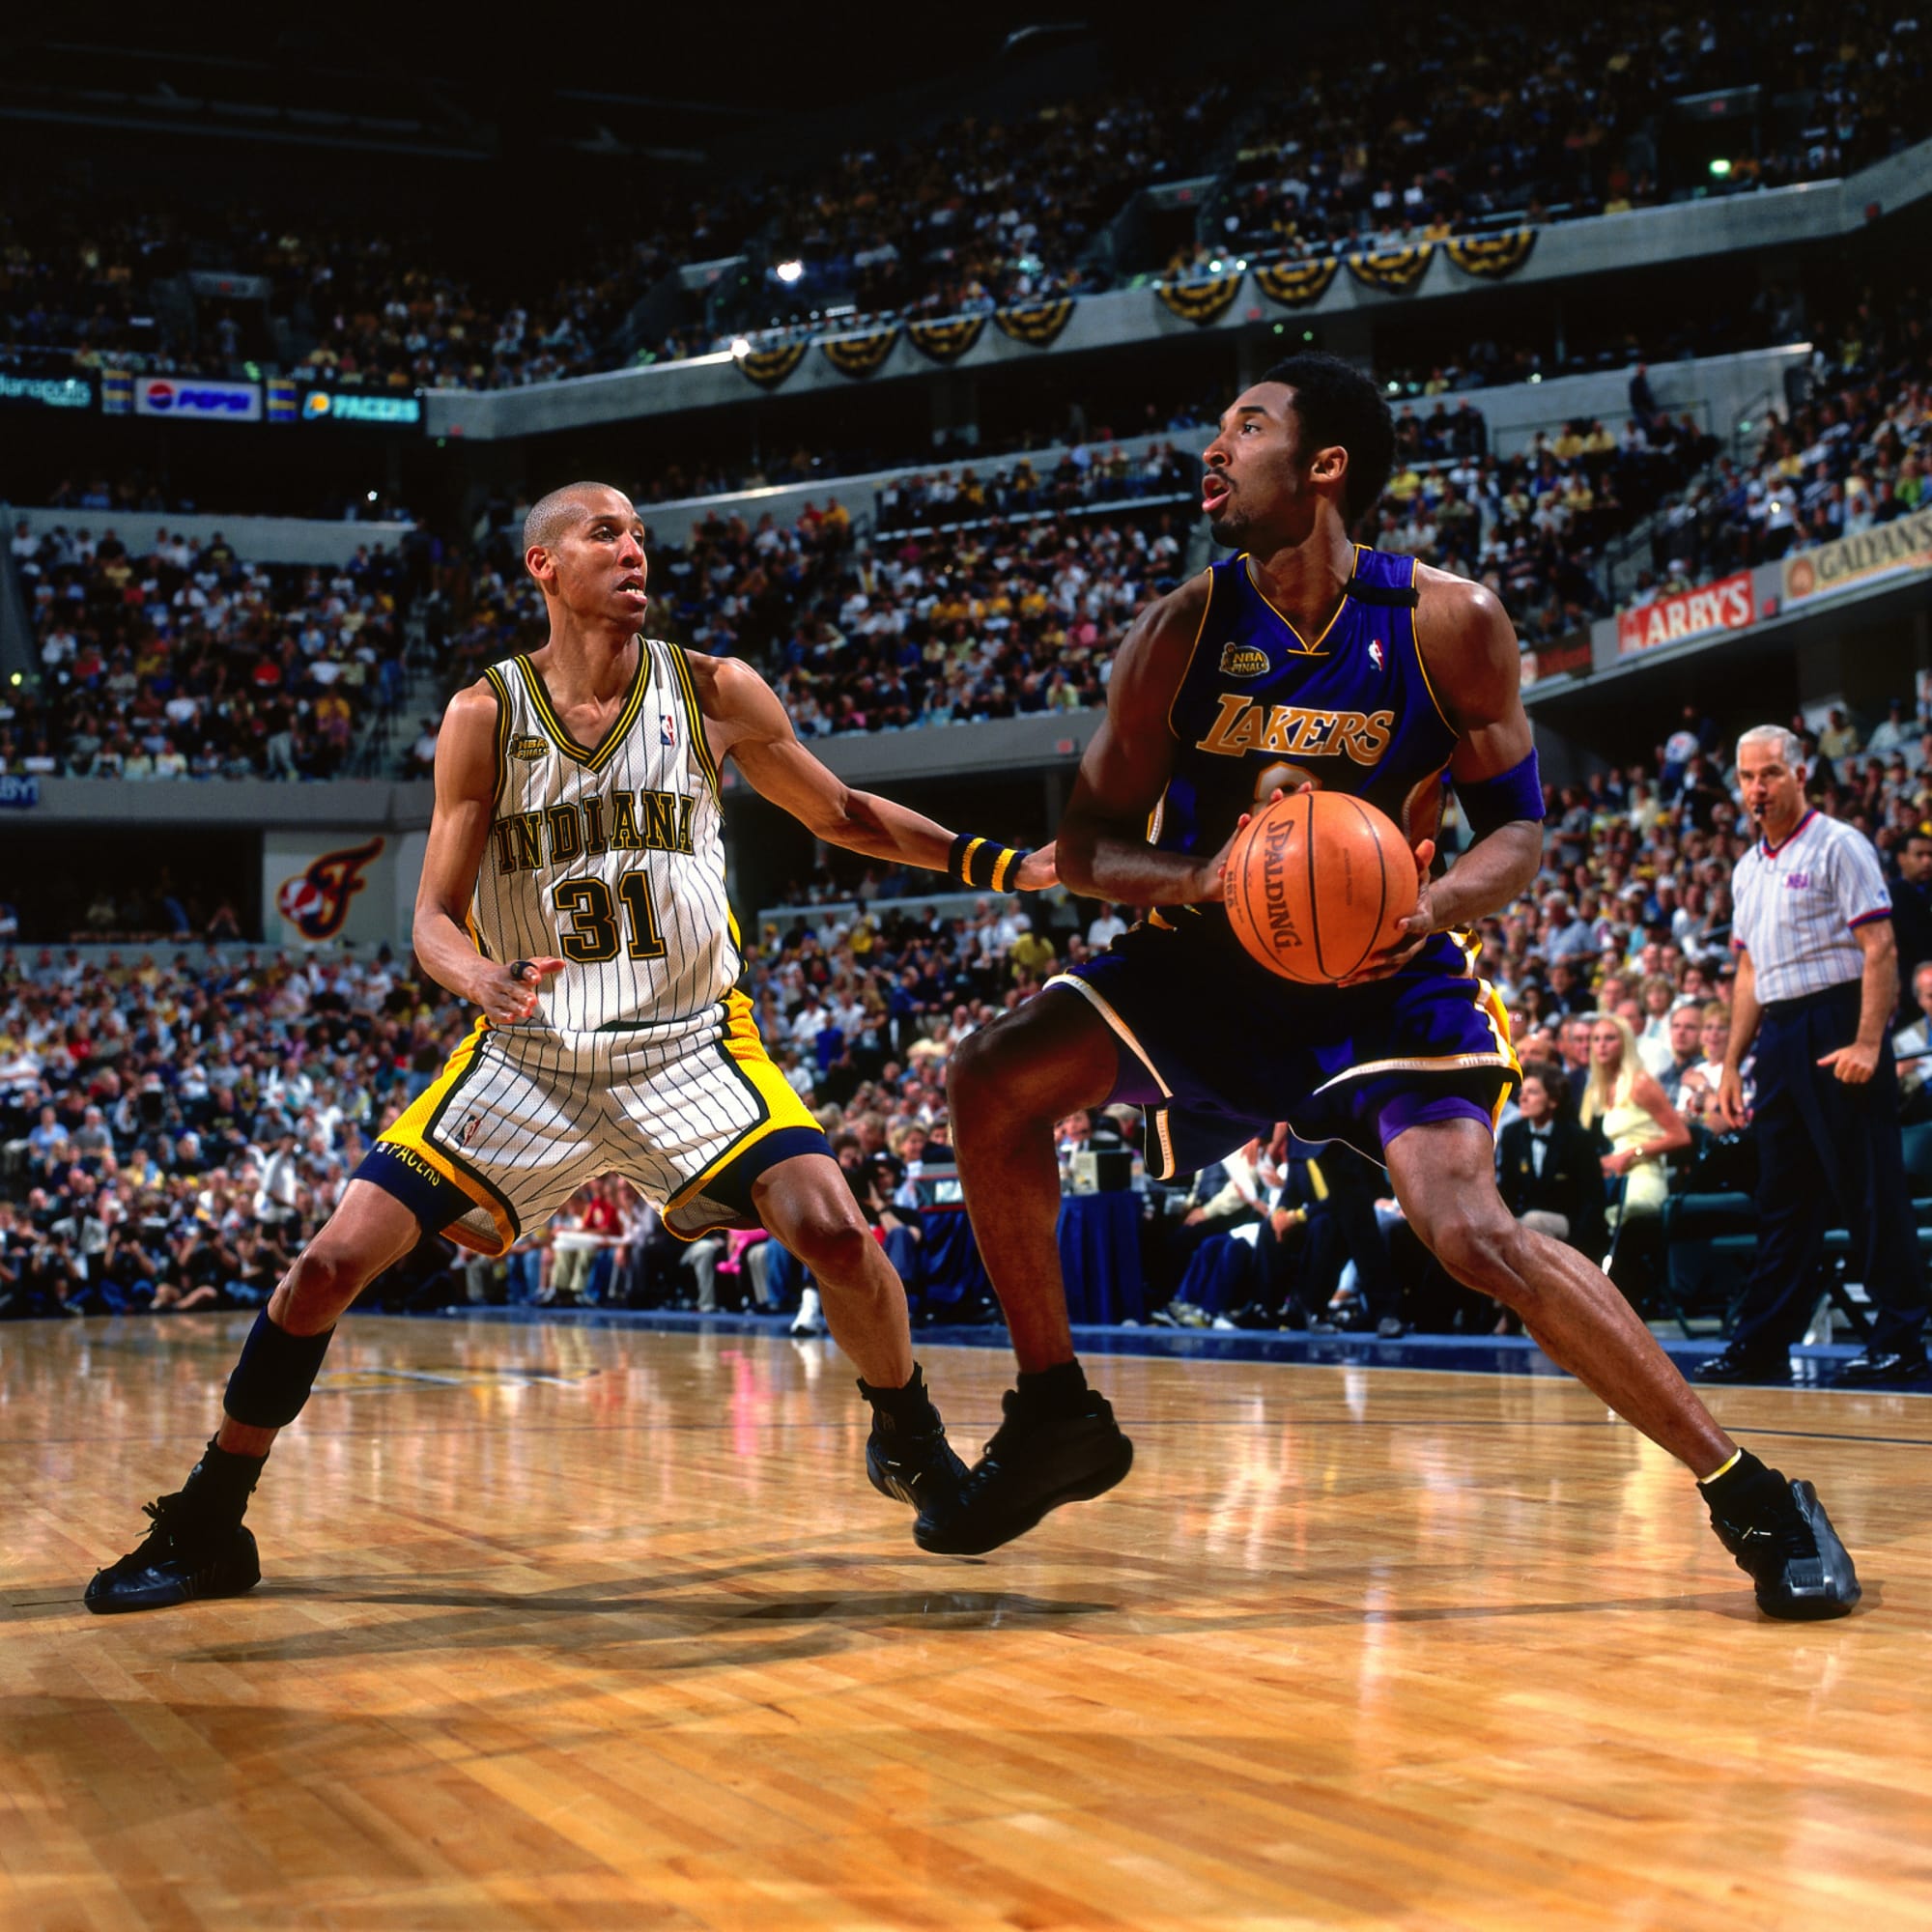 Kobe Bryant vs. Reggie Miller in the final seconds of the 2000